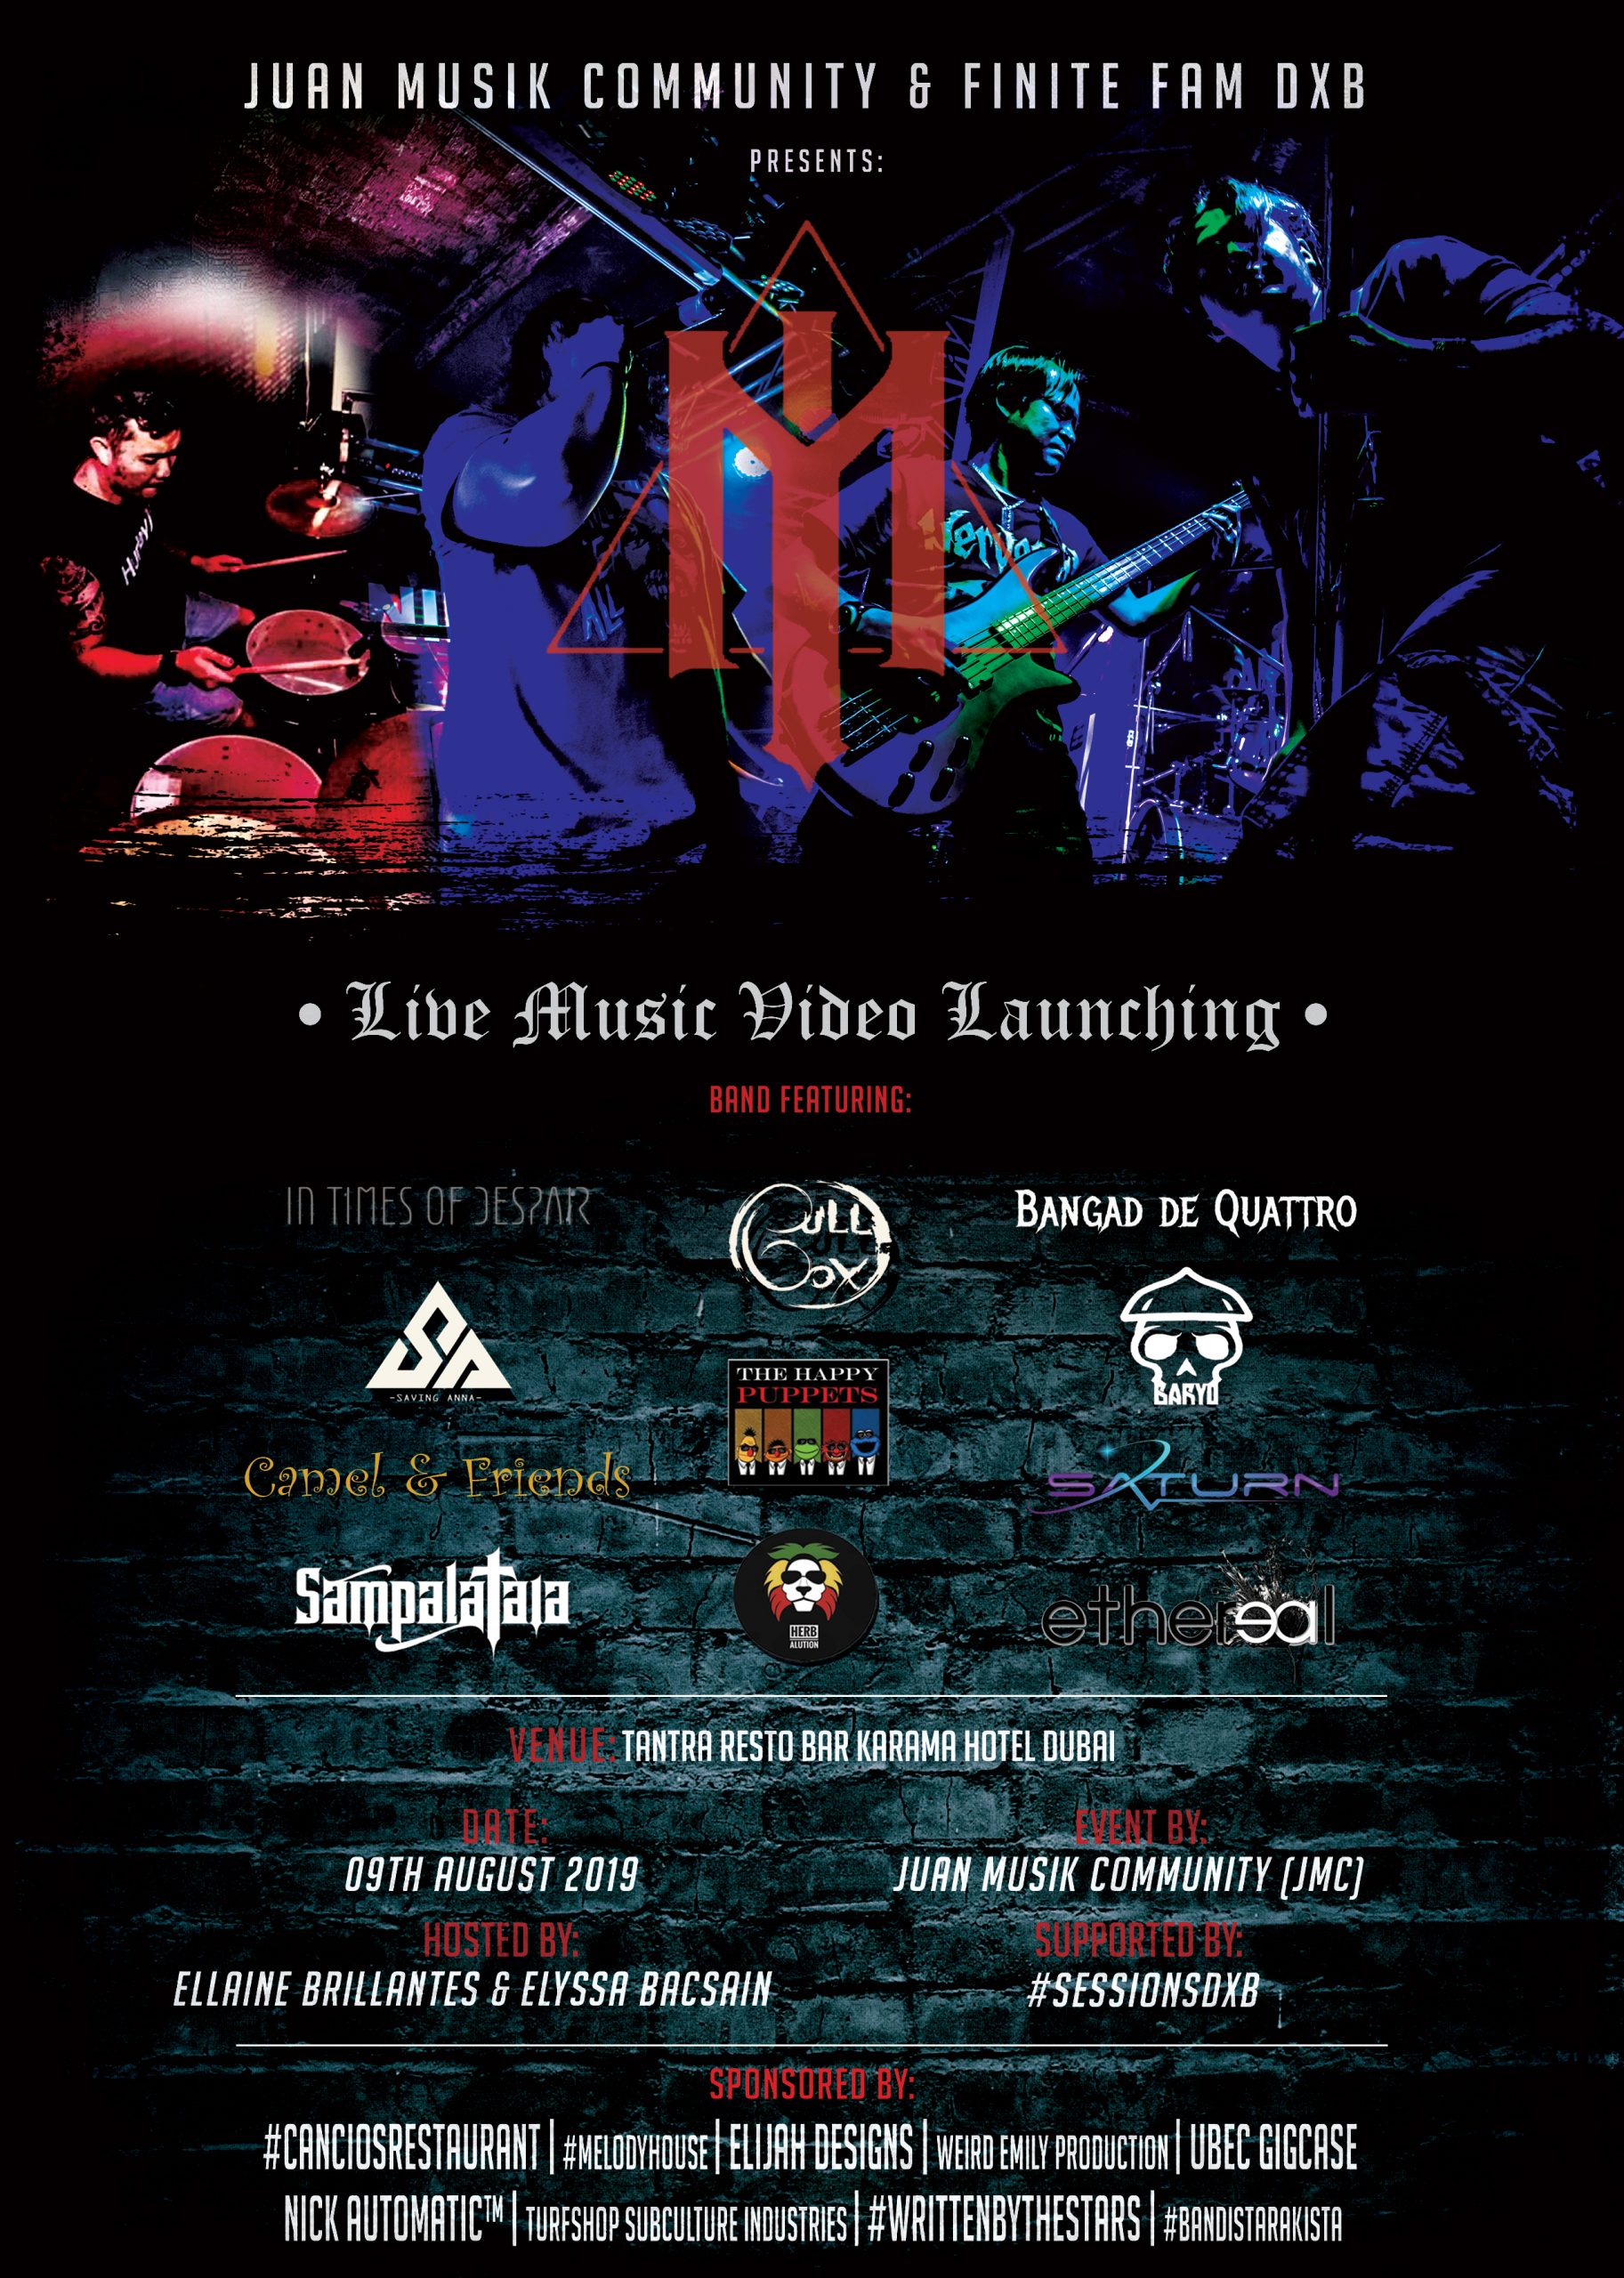 MandirigmA Live Music Video Launching